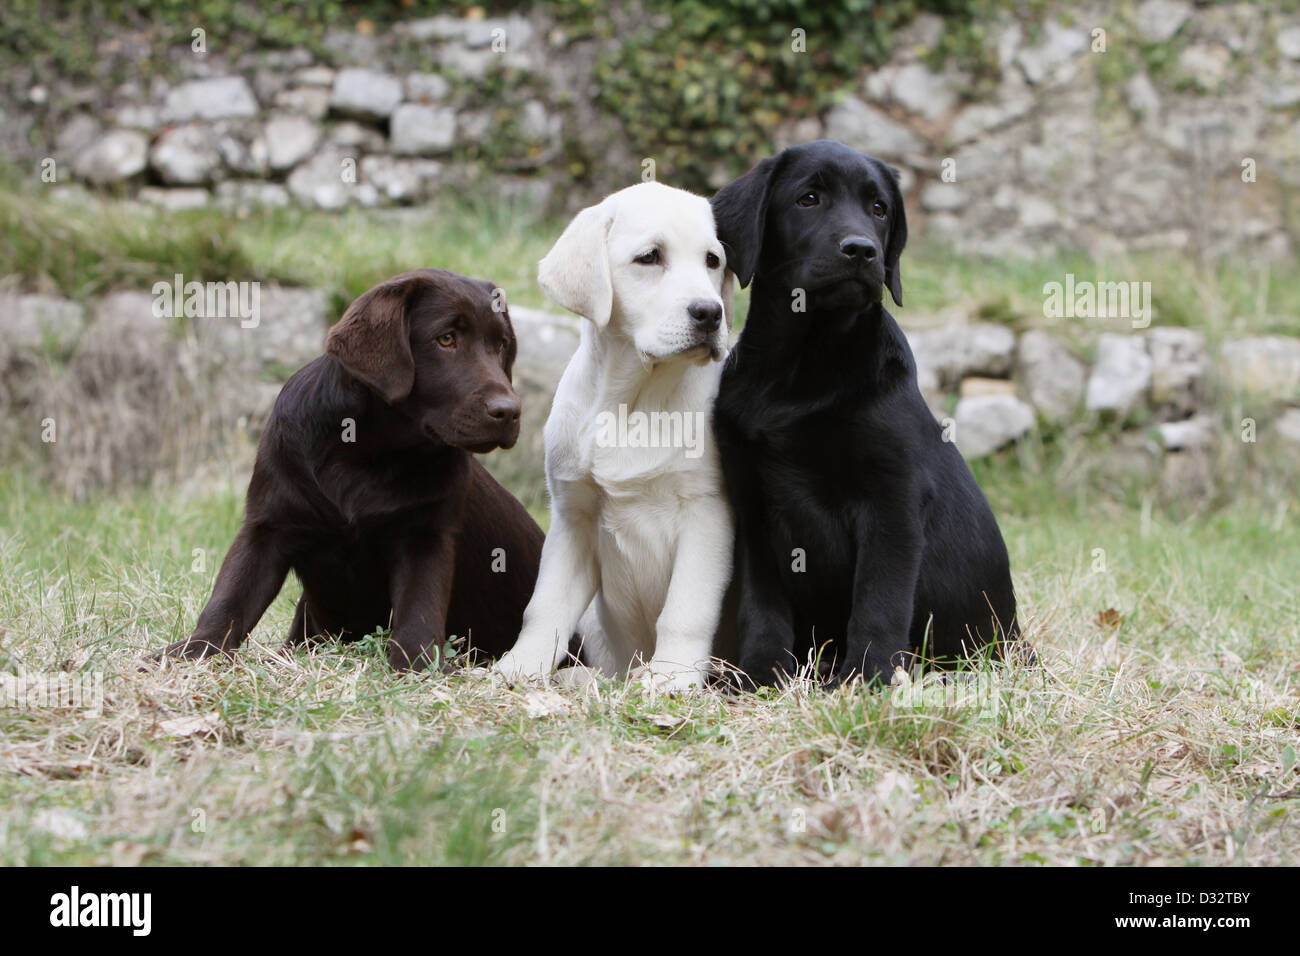 Sitzt der Hund Labrador Retriever drei Welpen verschiedene Farben (Schokolade, gelb und schwarz) Stockfoto